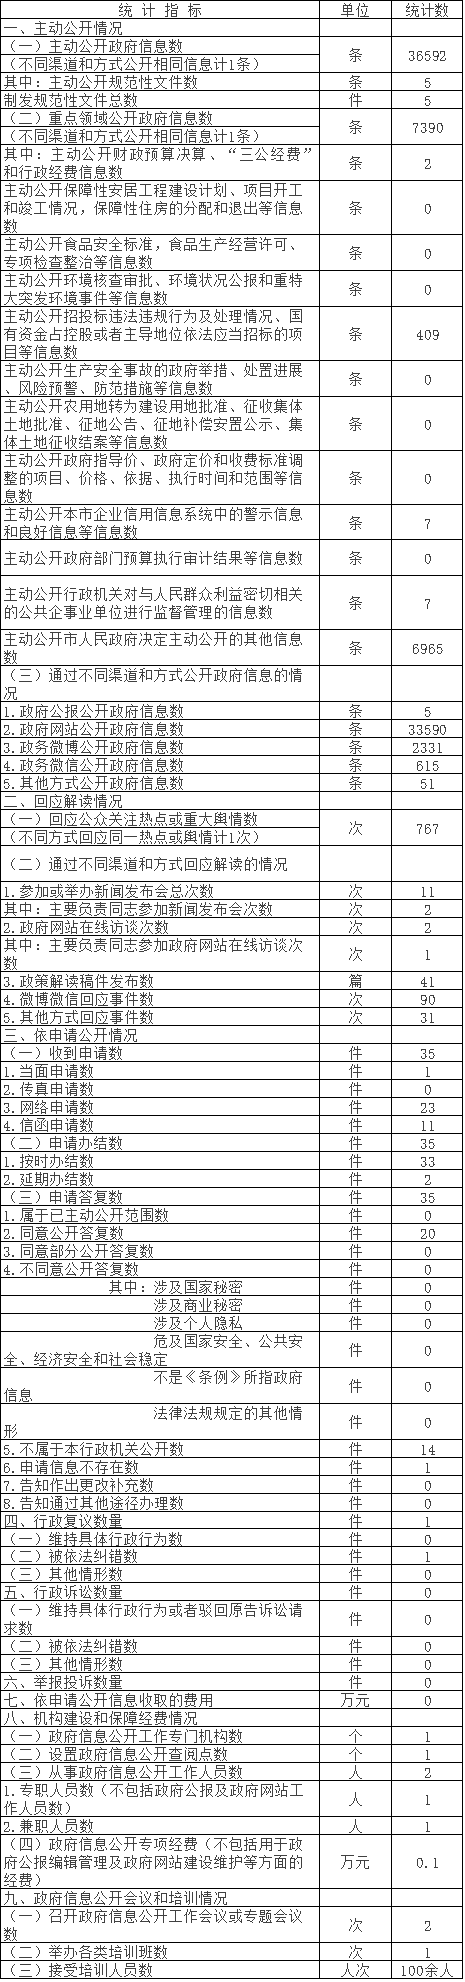 北京市水務局政府信息公開情況統計表(2017年度)